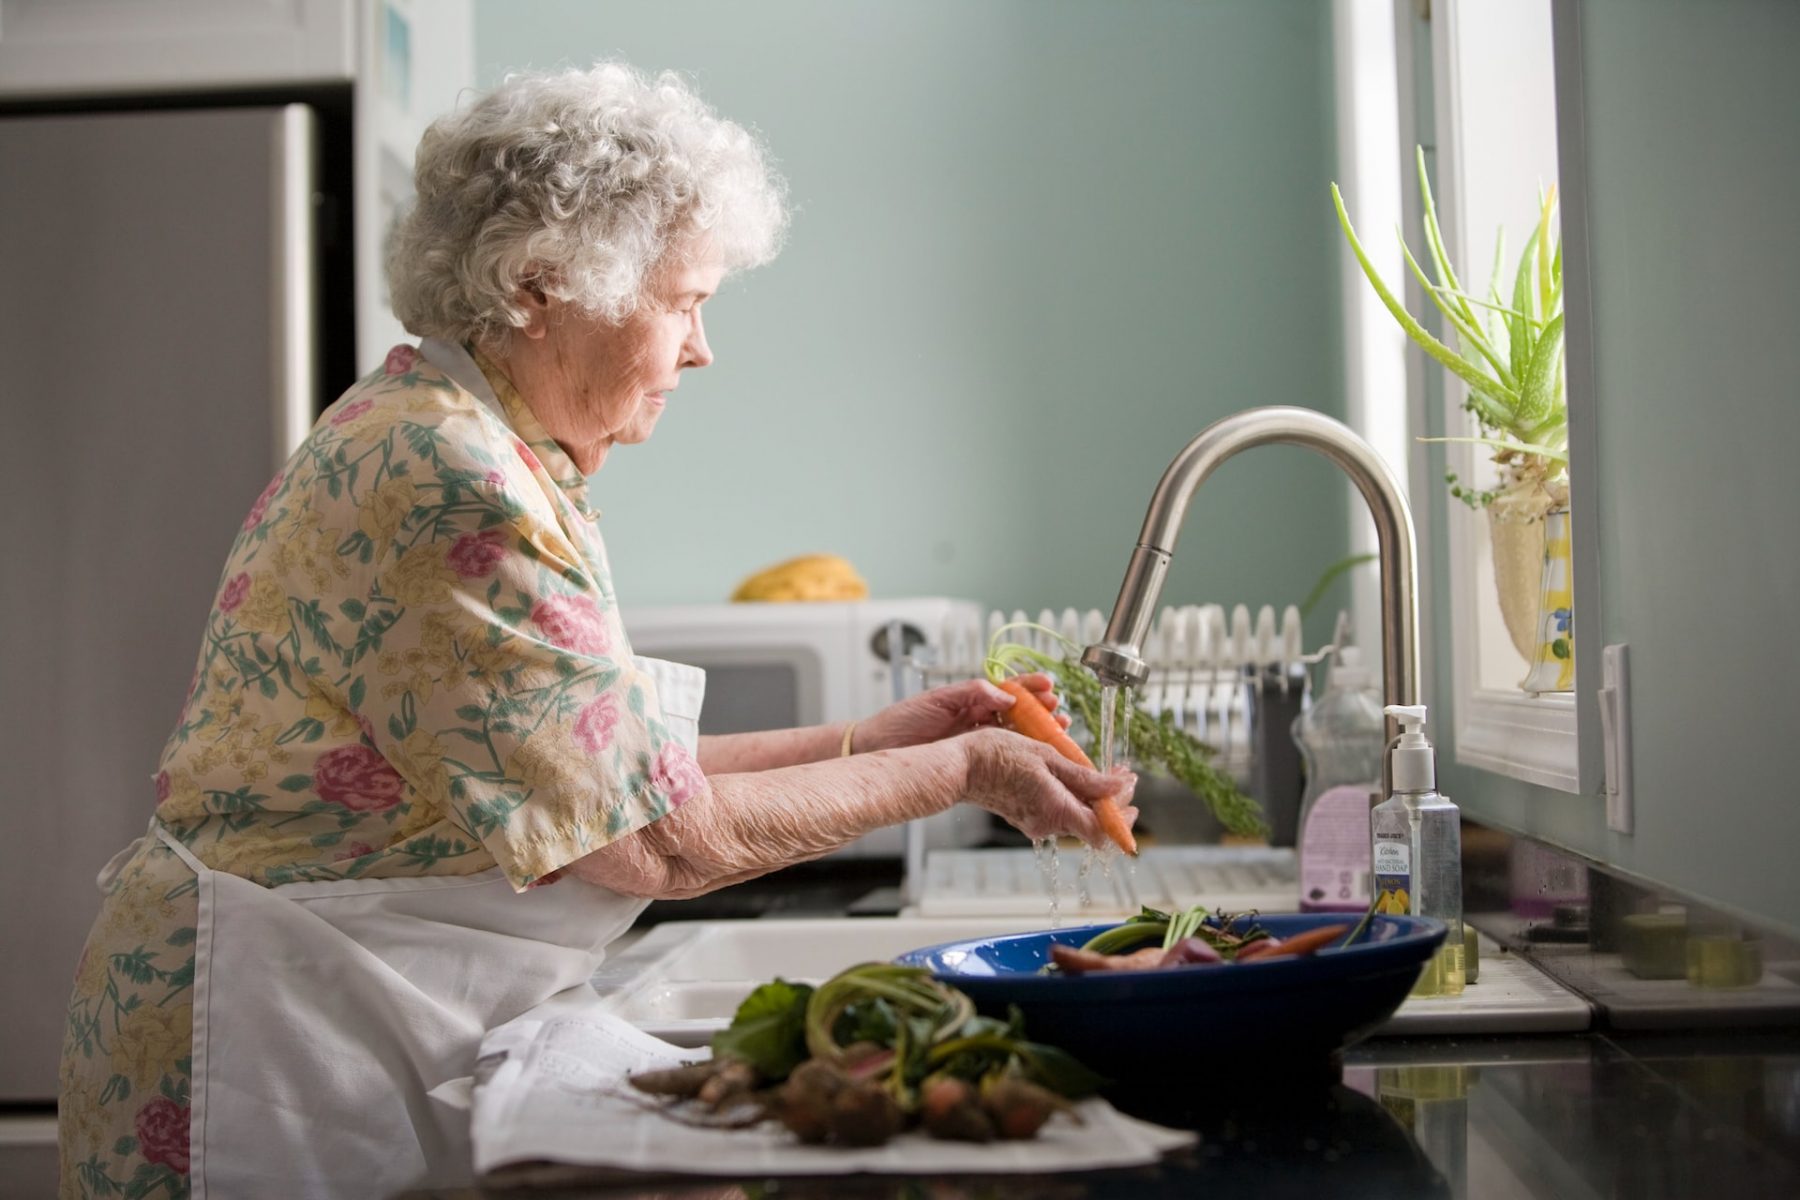 Διατροφή Aλτσχάιμερ: Συμβουλές μαγειρικής και απλές συνταγές για ασθενείς με Αλτσχάιμερ